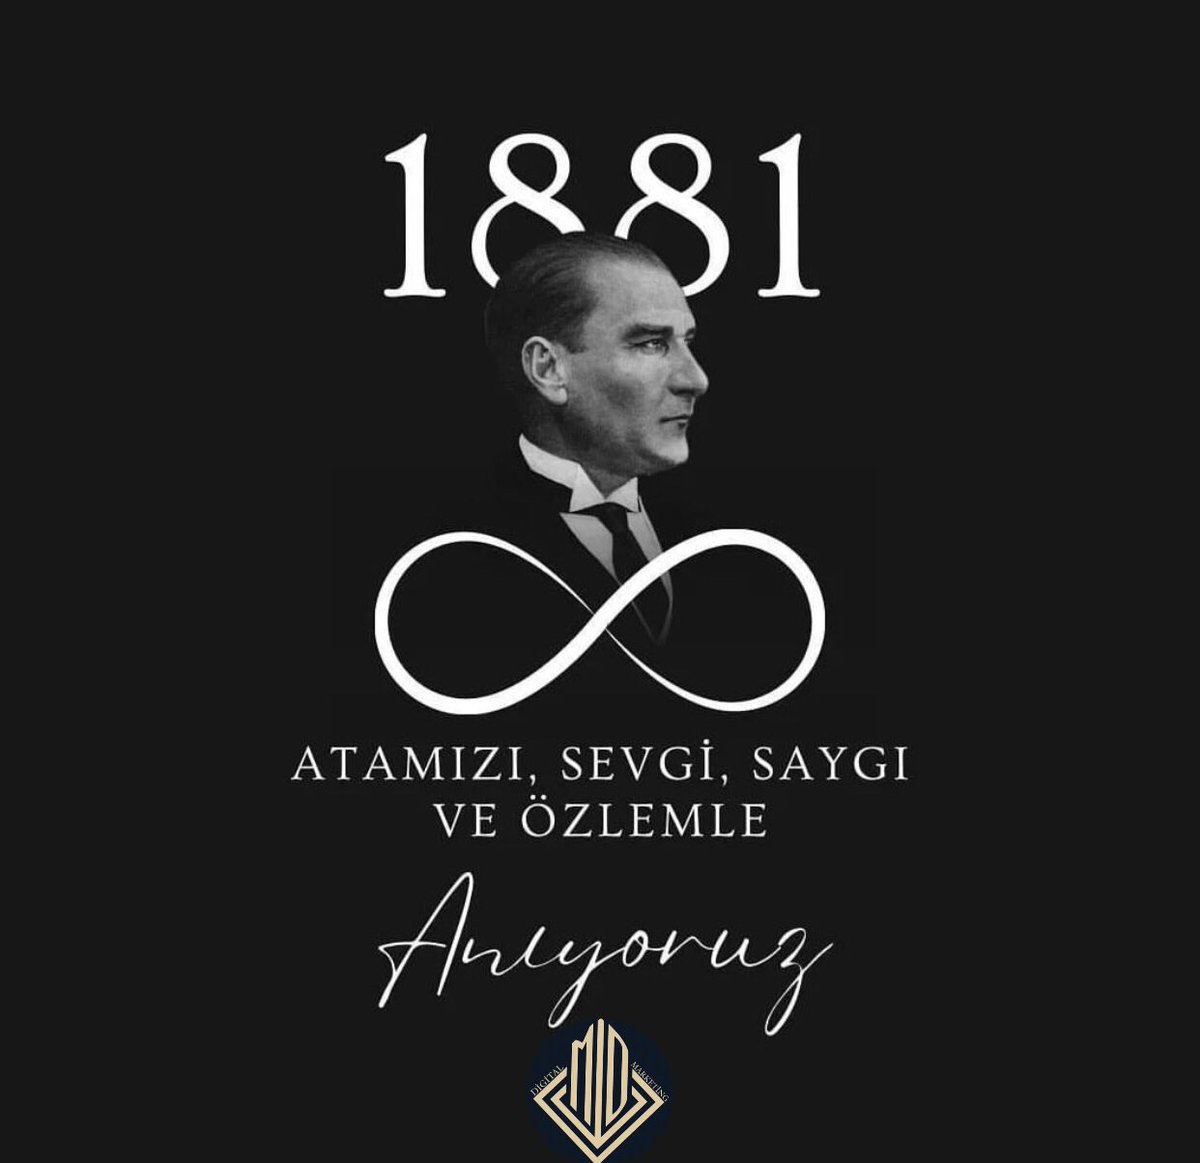 Mustafa Kemal Atatürk'ün ölümünün 85. yıl dönümünde, onun önderliğindeki Türkiye Cumhuriyeti'ni daha da büyütmek ve güçlendirmek için çalışmaya kararlıyız. Minnet ve saygıyla anıyoruz.... #10Kasim #10Kasim1938